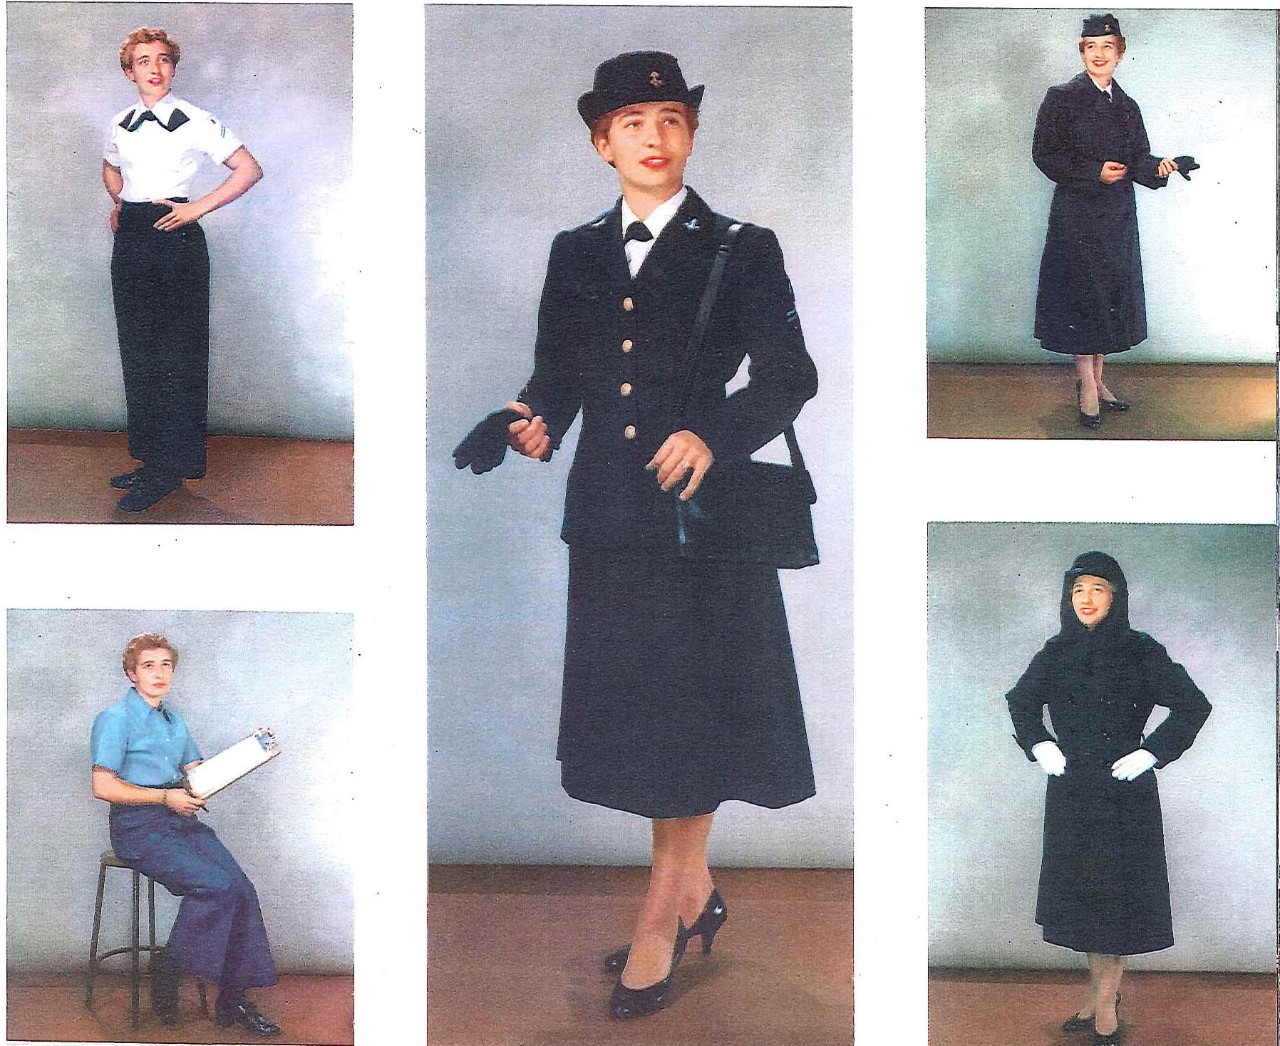 Different uniforms